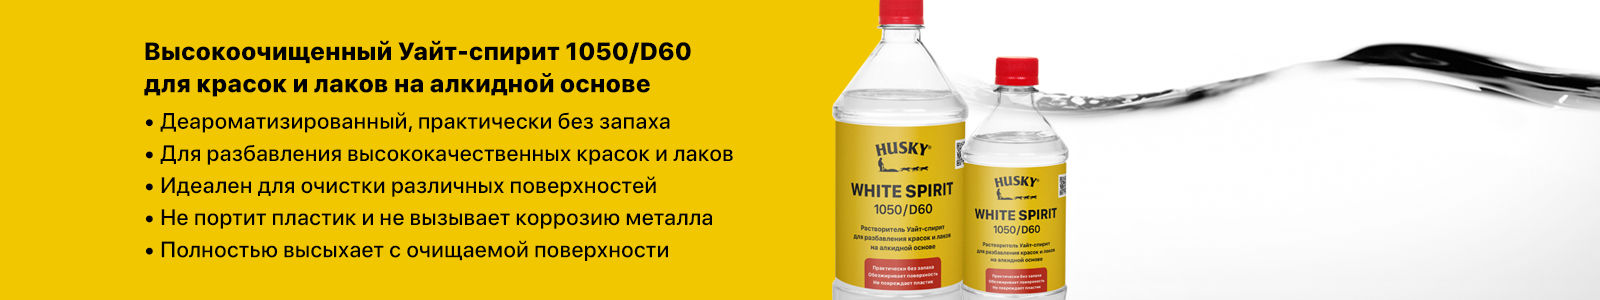 Whitespirit 1050/D60